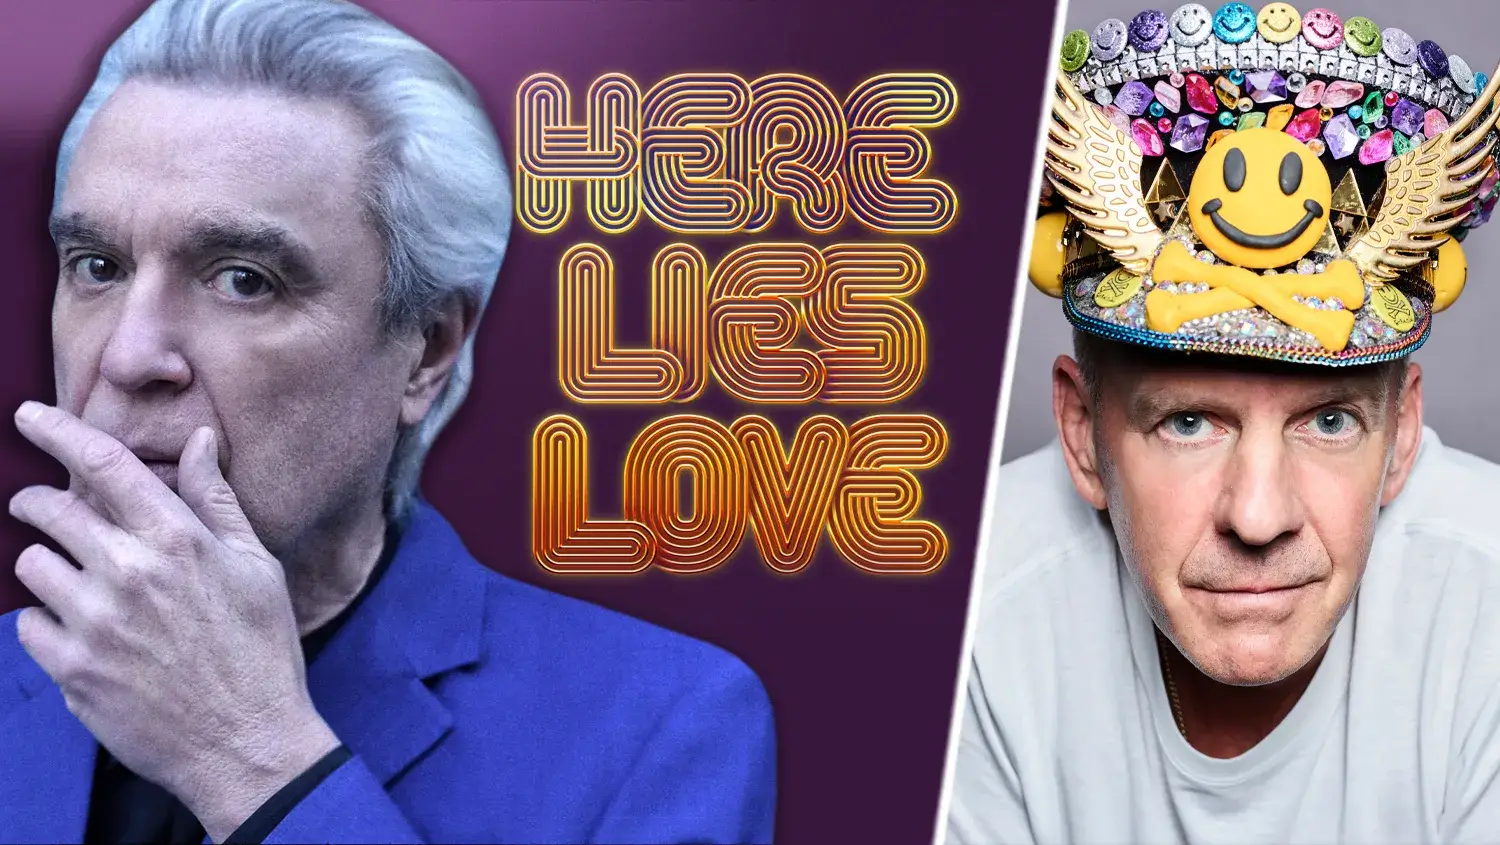 Arrancó en Brodway el musical “Here Lies Love” compuesto por David Byrne y Fatboy Slim